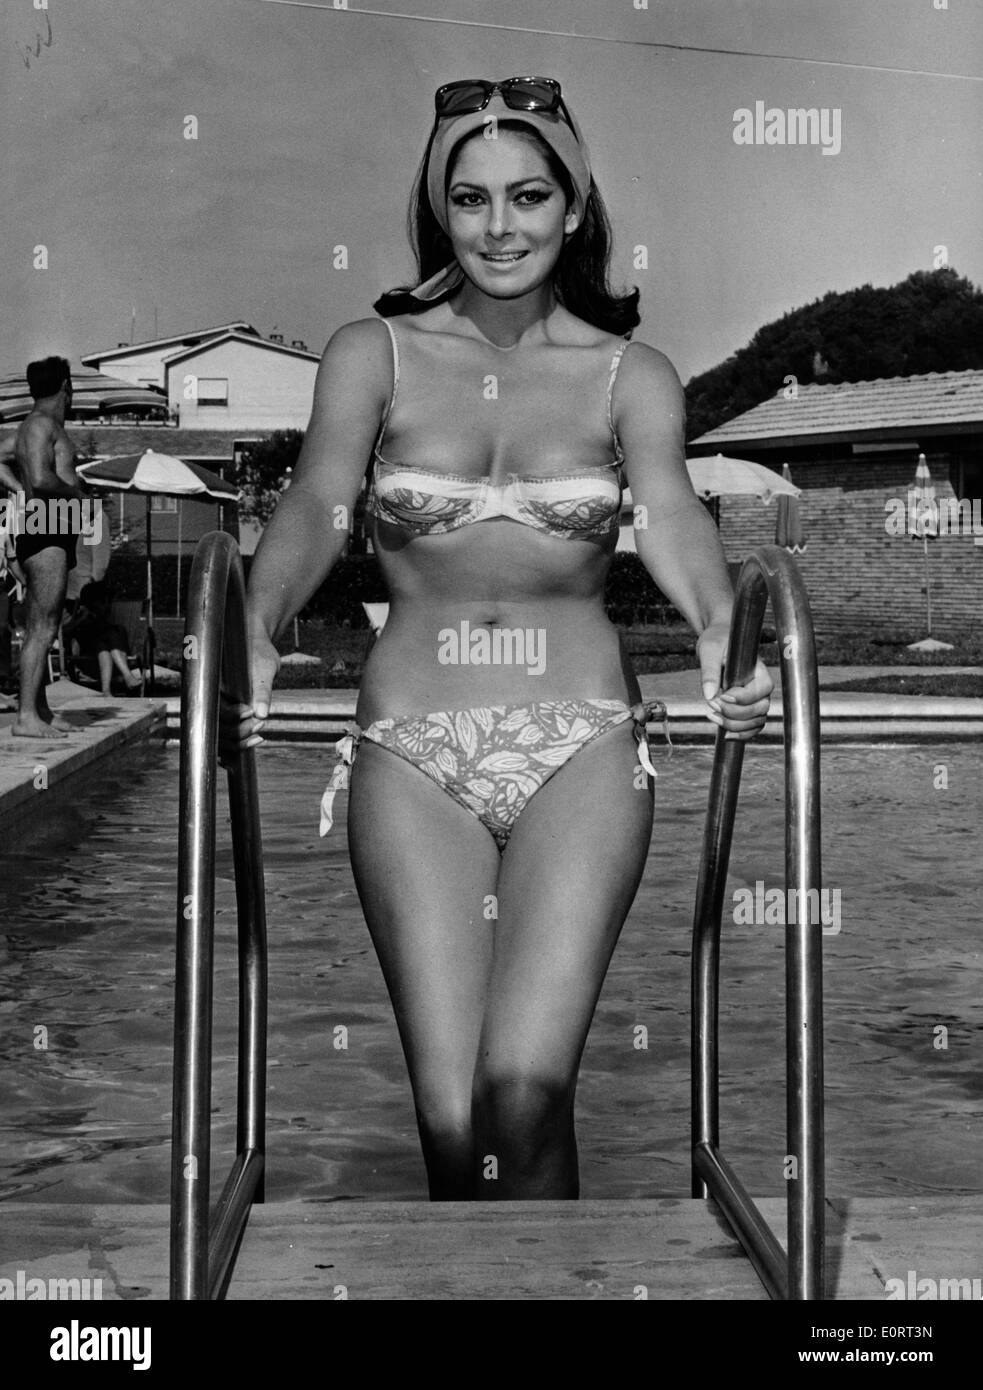 Luciana Vicnenzi klettern aus dem Pool im bikini Stockfotografie - Alamy